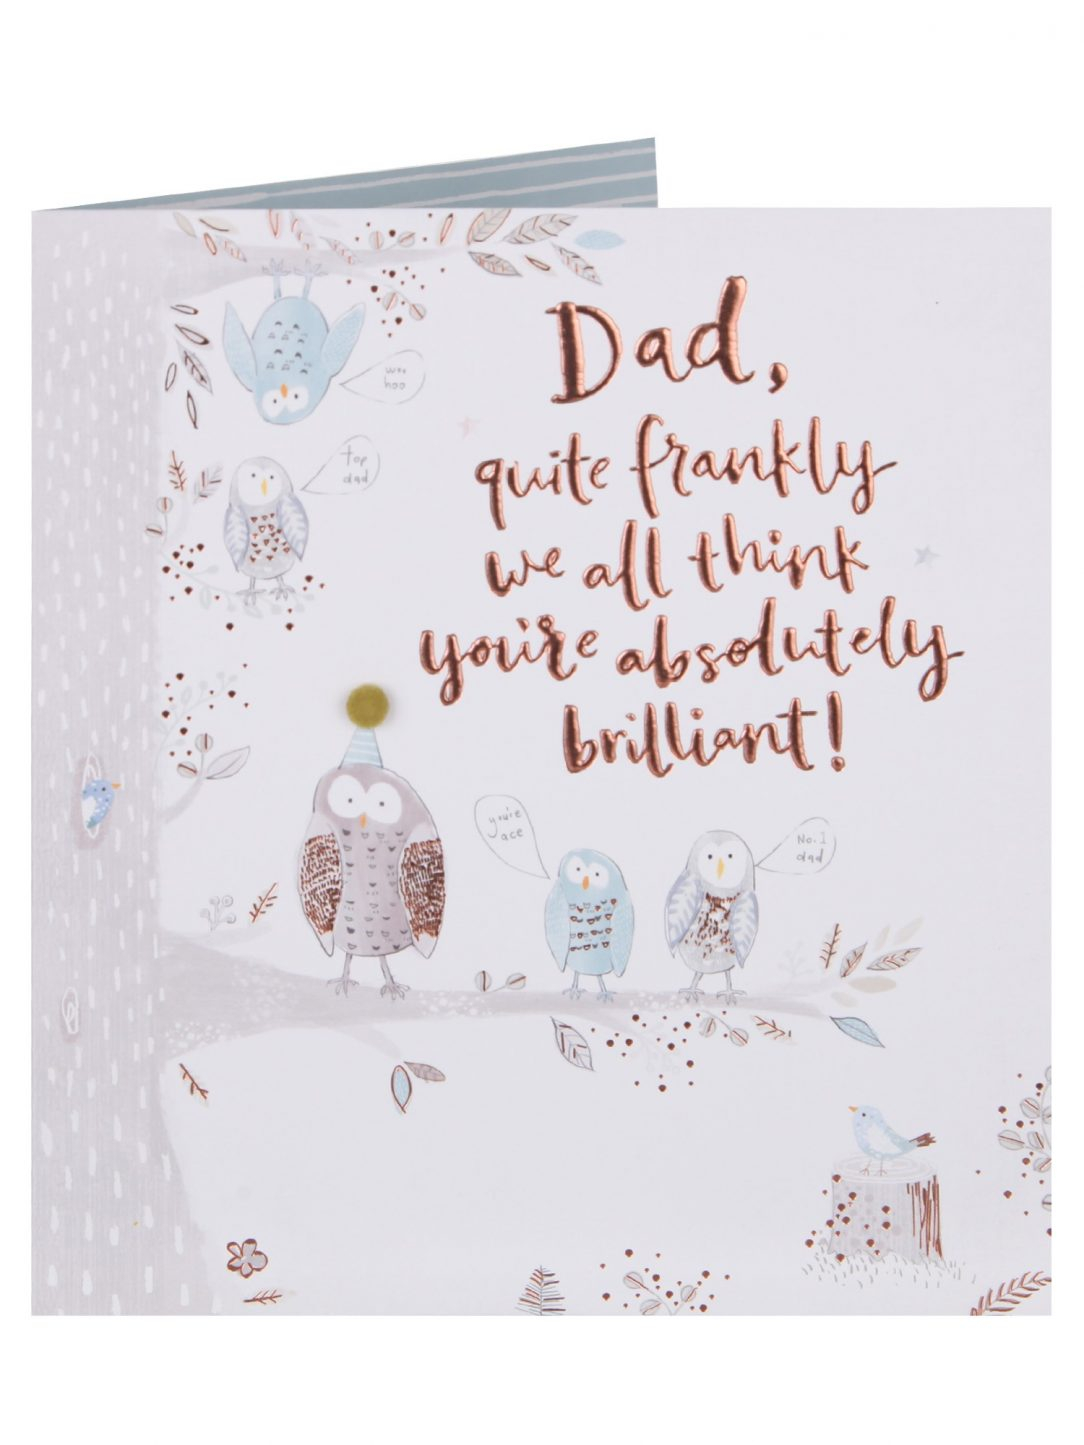 Cute Birthday Card Ideas For Dad Easy Dad Birthday Card Ideas Cute For Your Wording Text Mum And